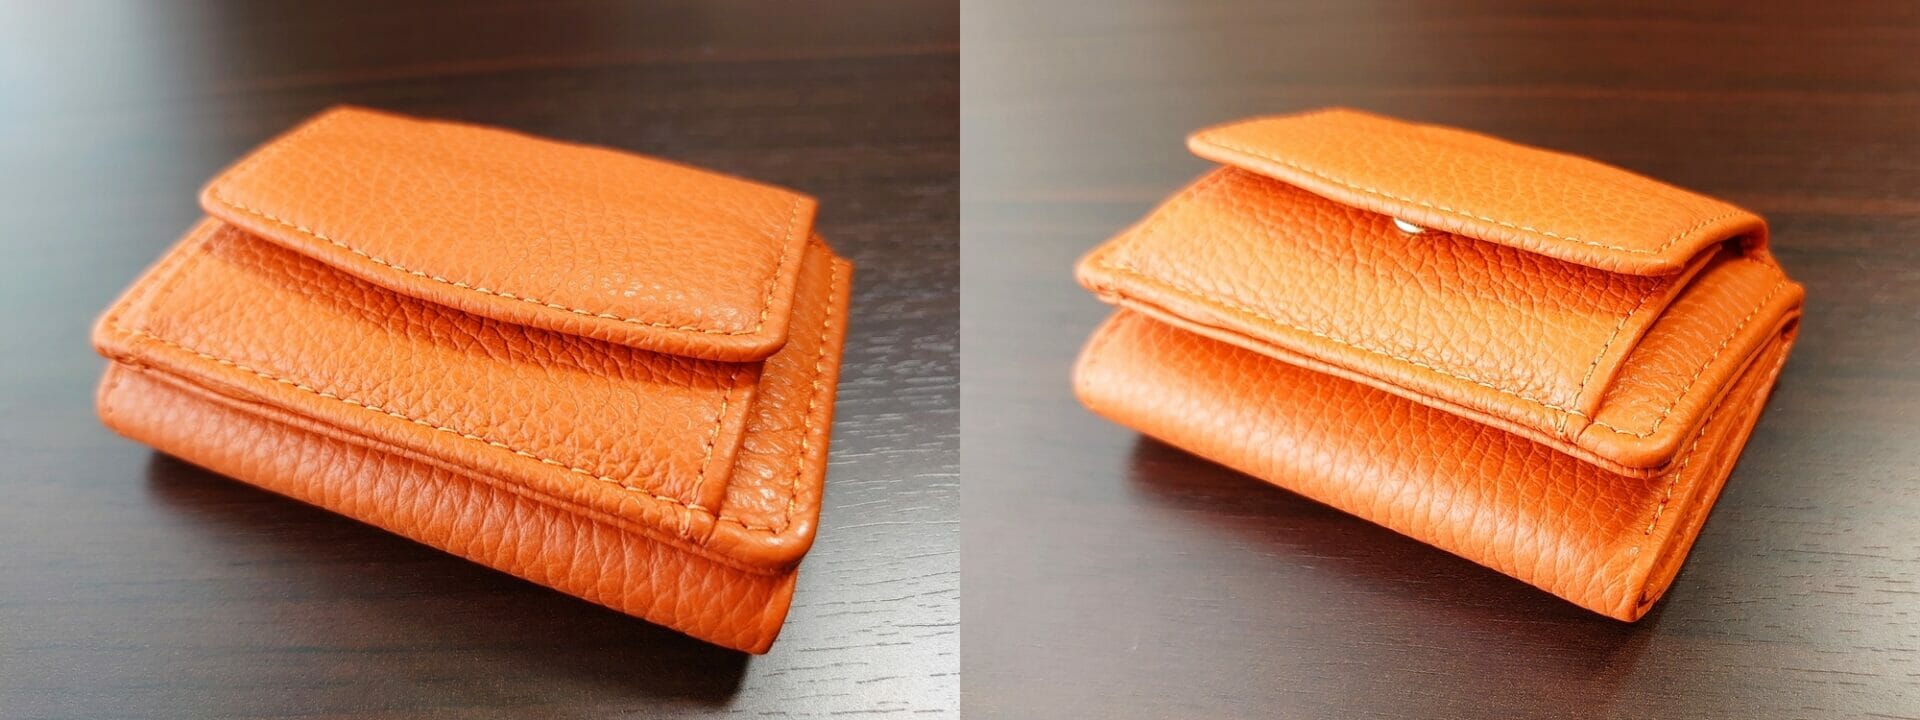 三つ折り財布 ST-909 イタリア製シュリンクレザー スキミング防止機能付 ミニ財布（オレンジ）MURA（ムラ）財布の厚み 空の状態と比較